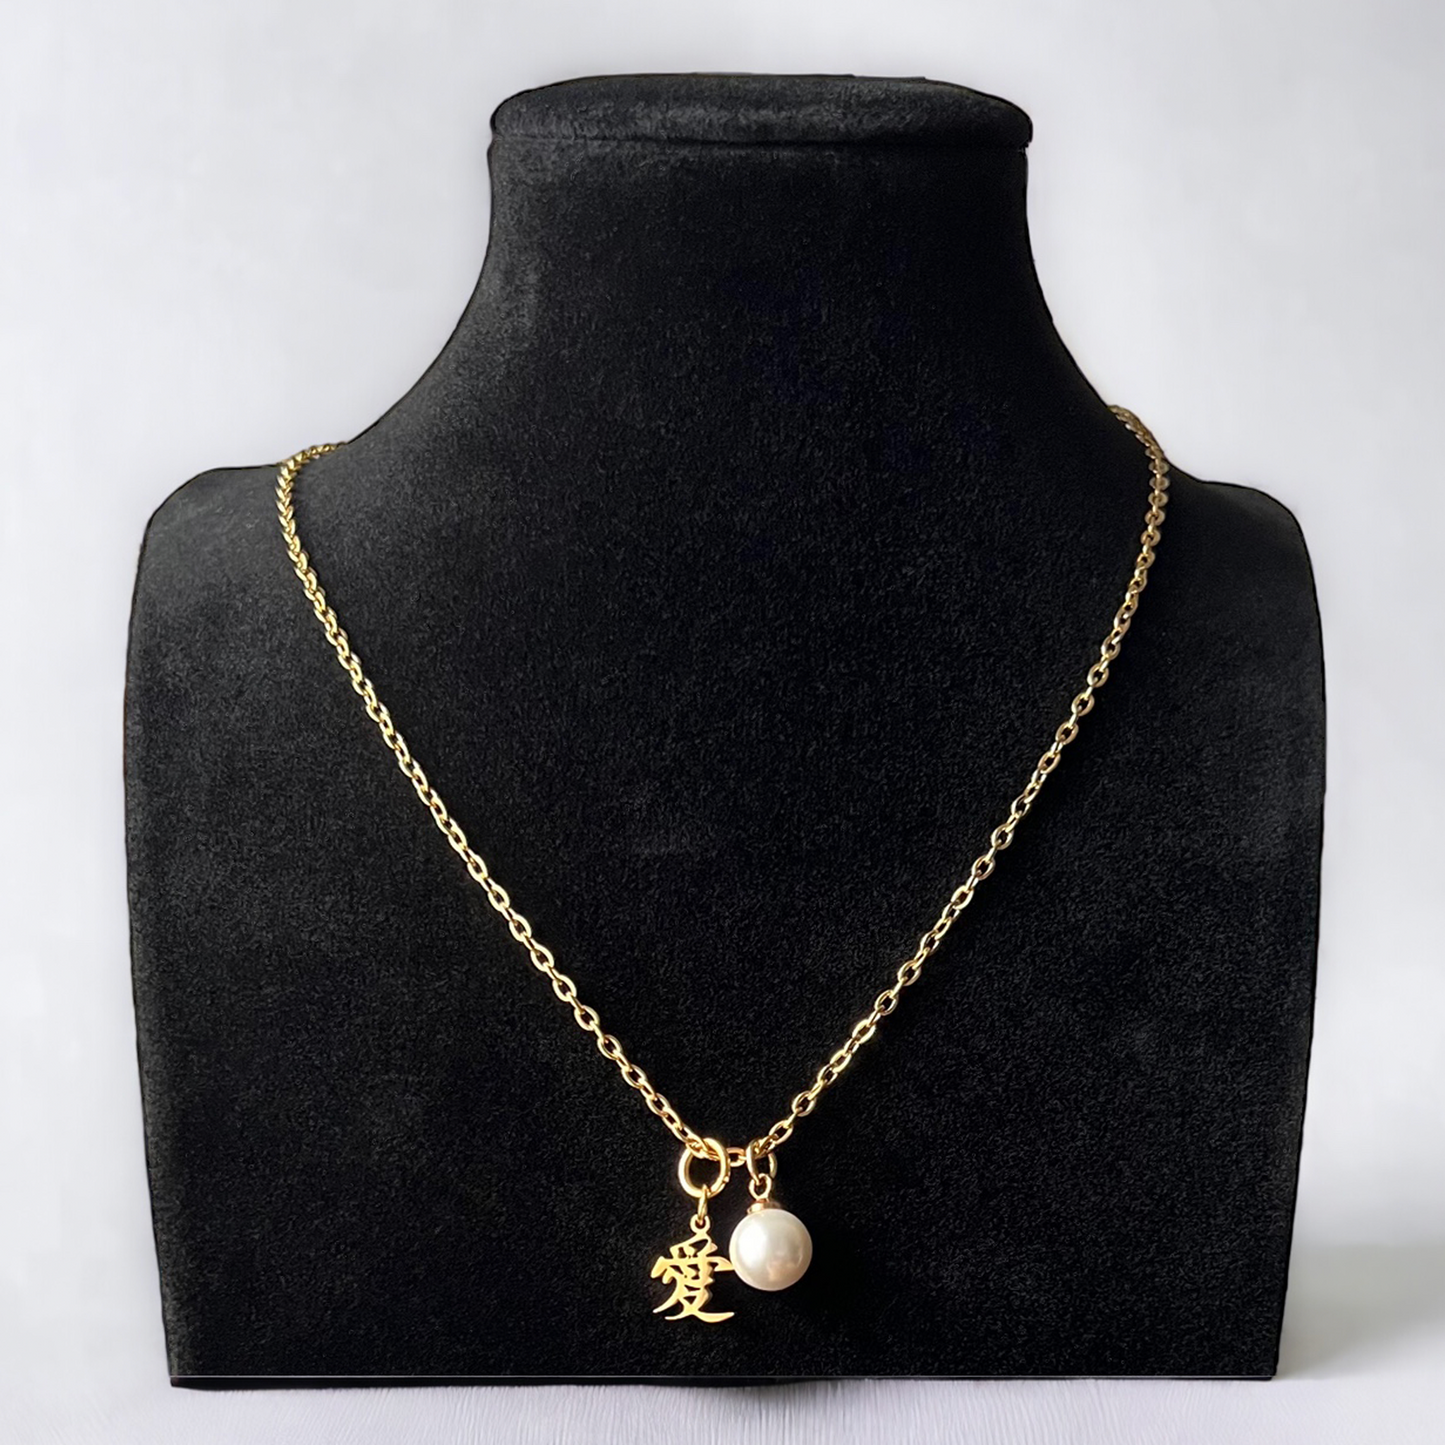 爱 "Love" Pearl charm Necklace Gold